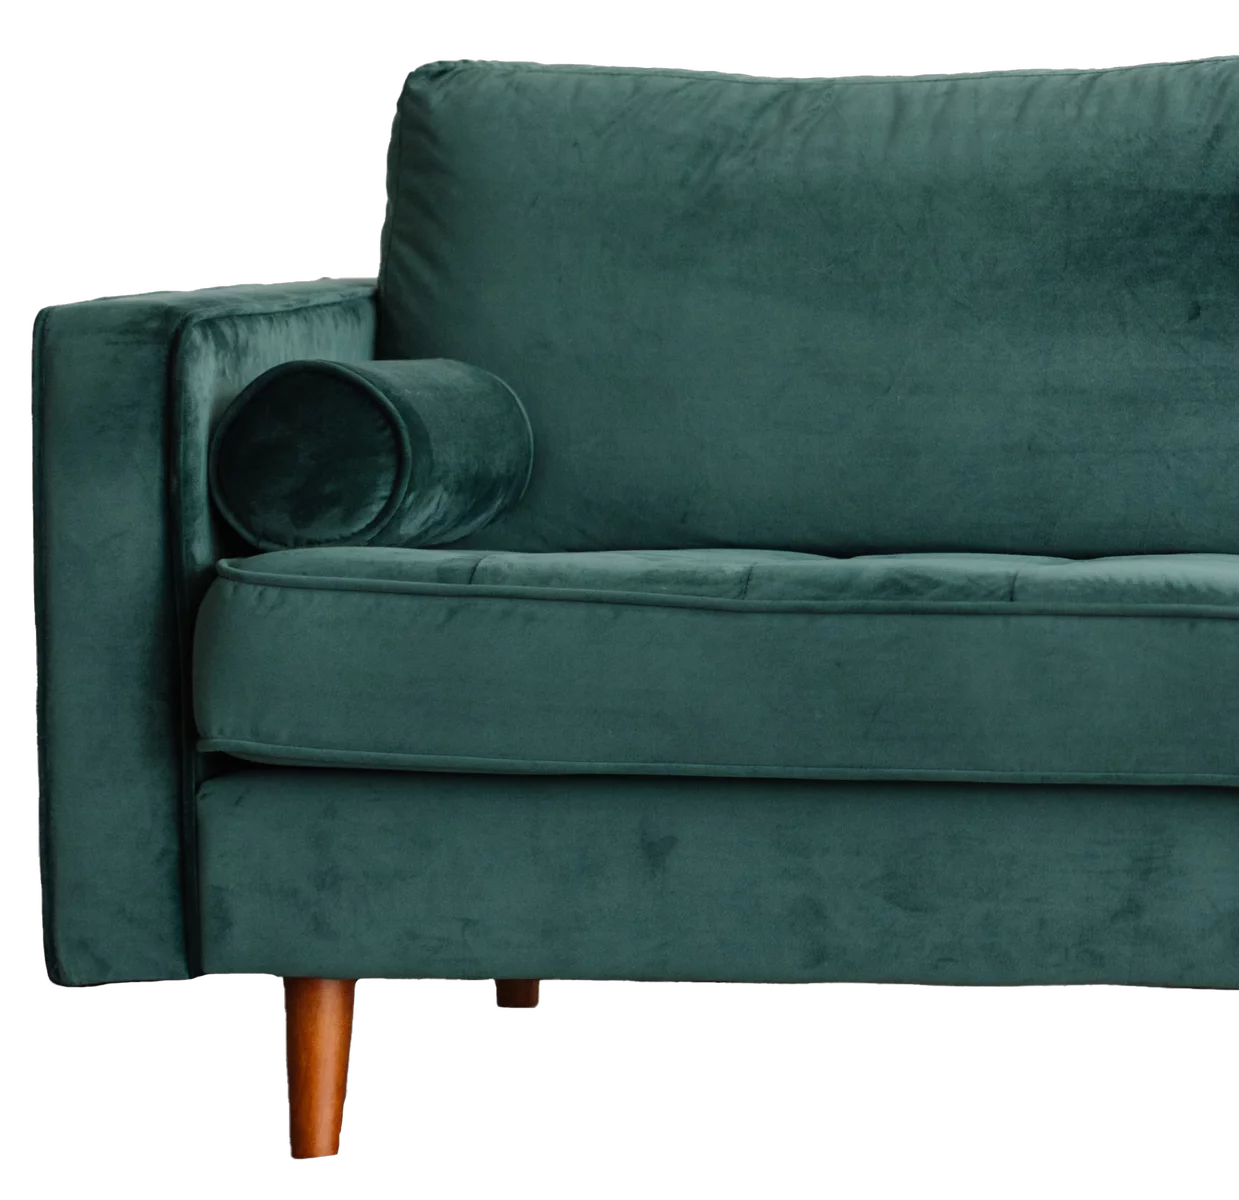 photo of green velvet couch.